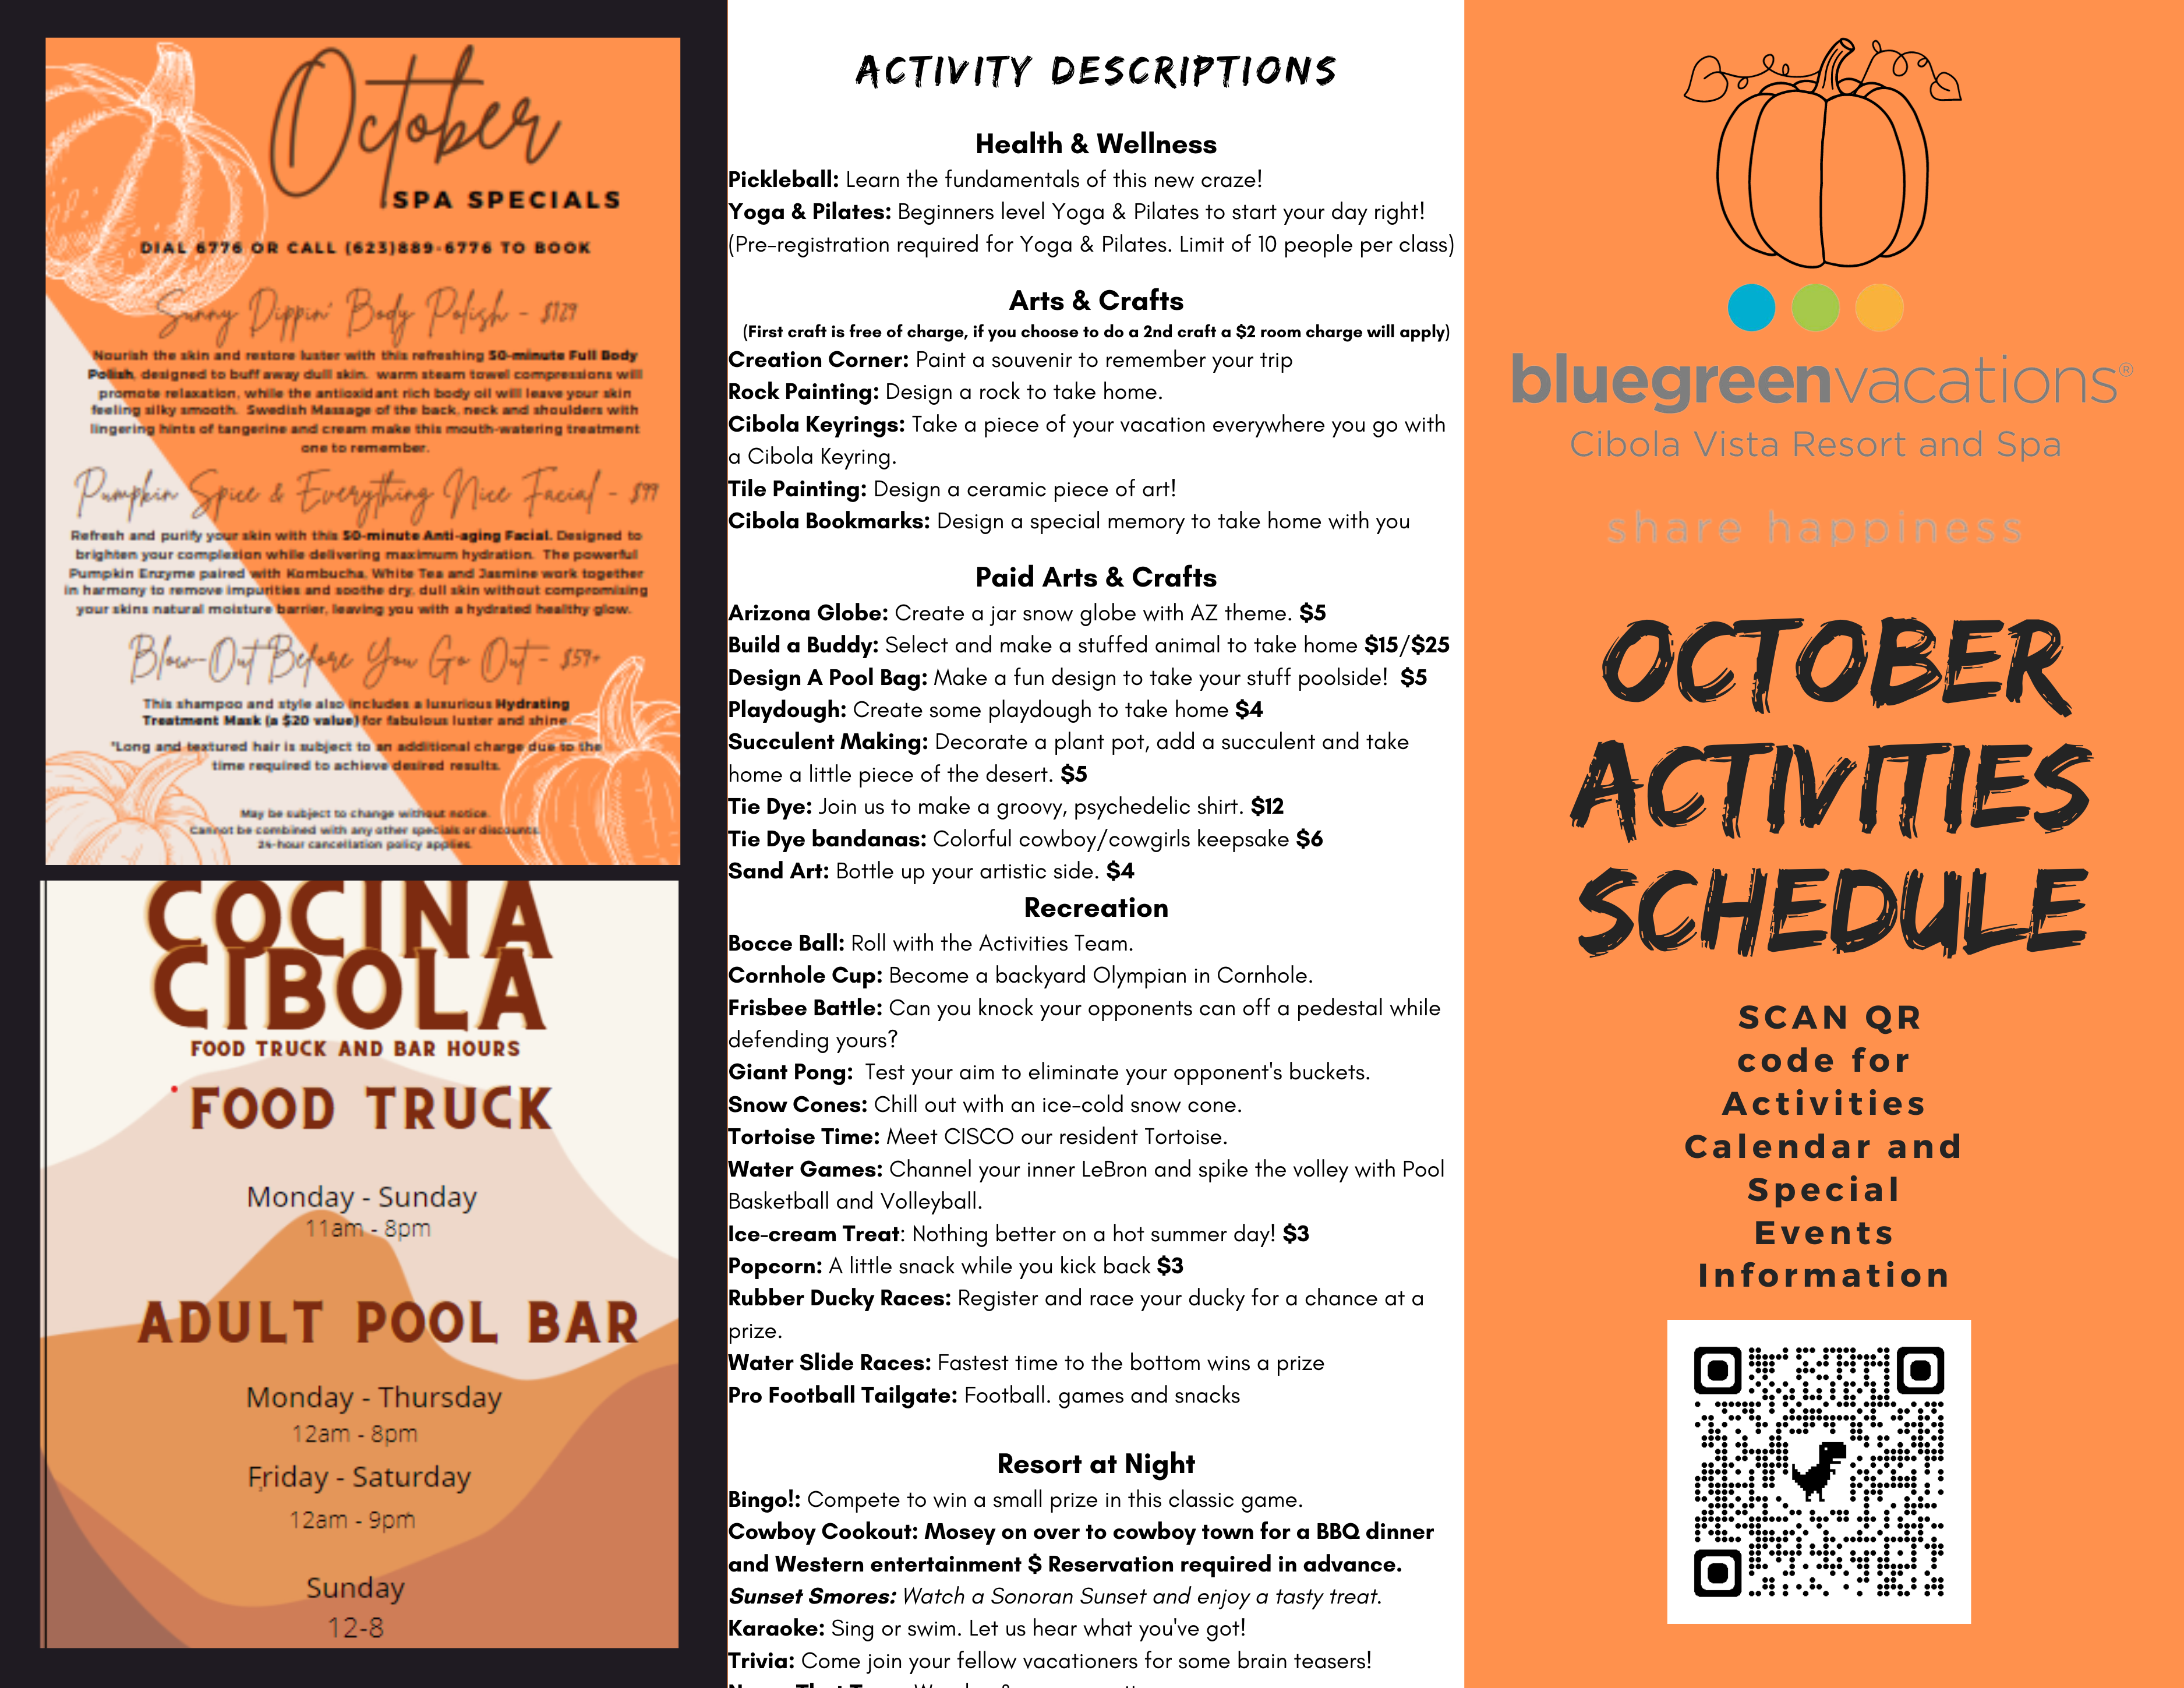 Cibola Vista Resort & Spa Special Events